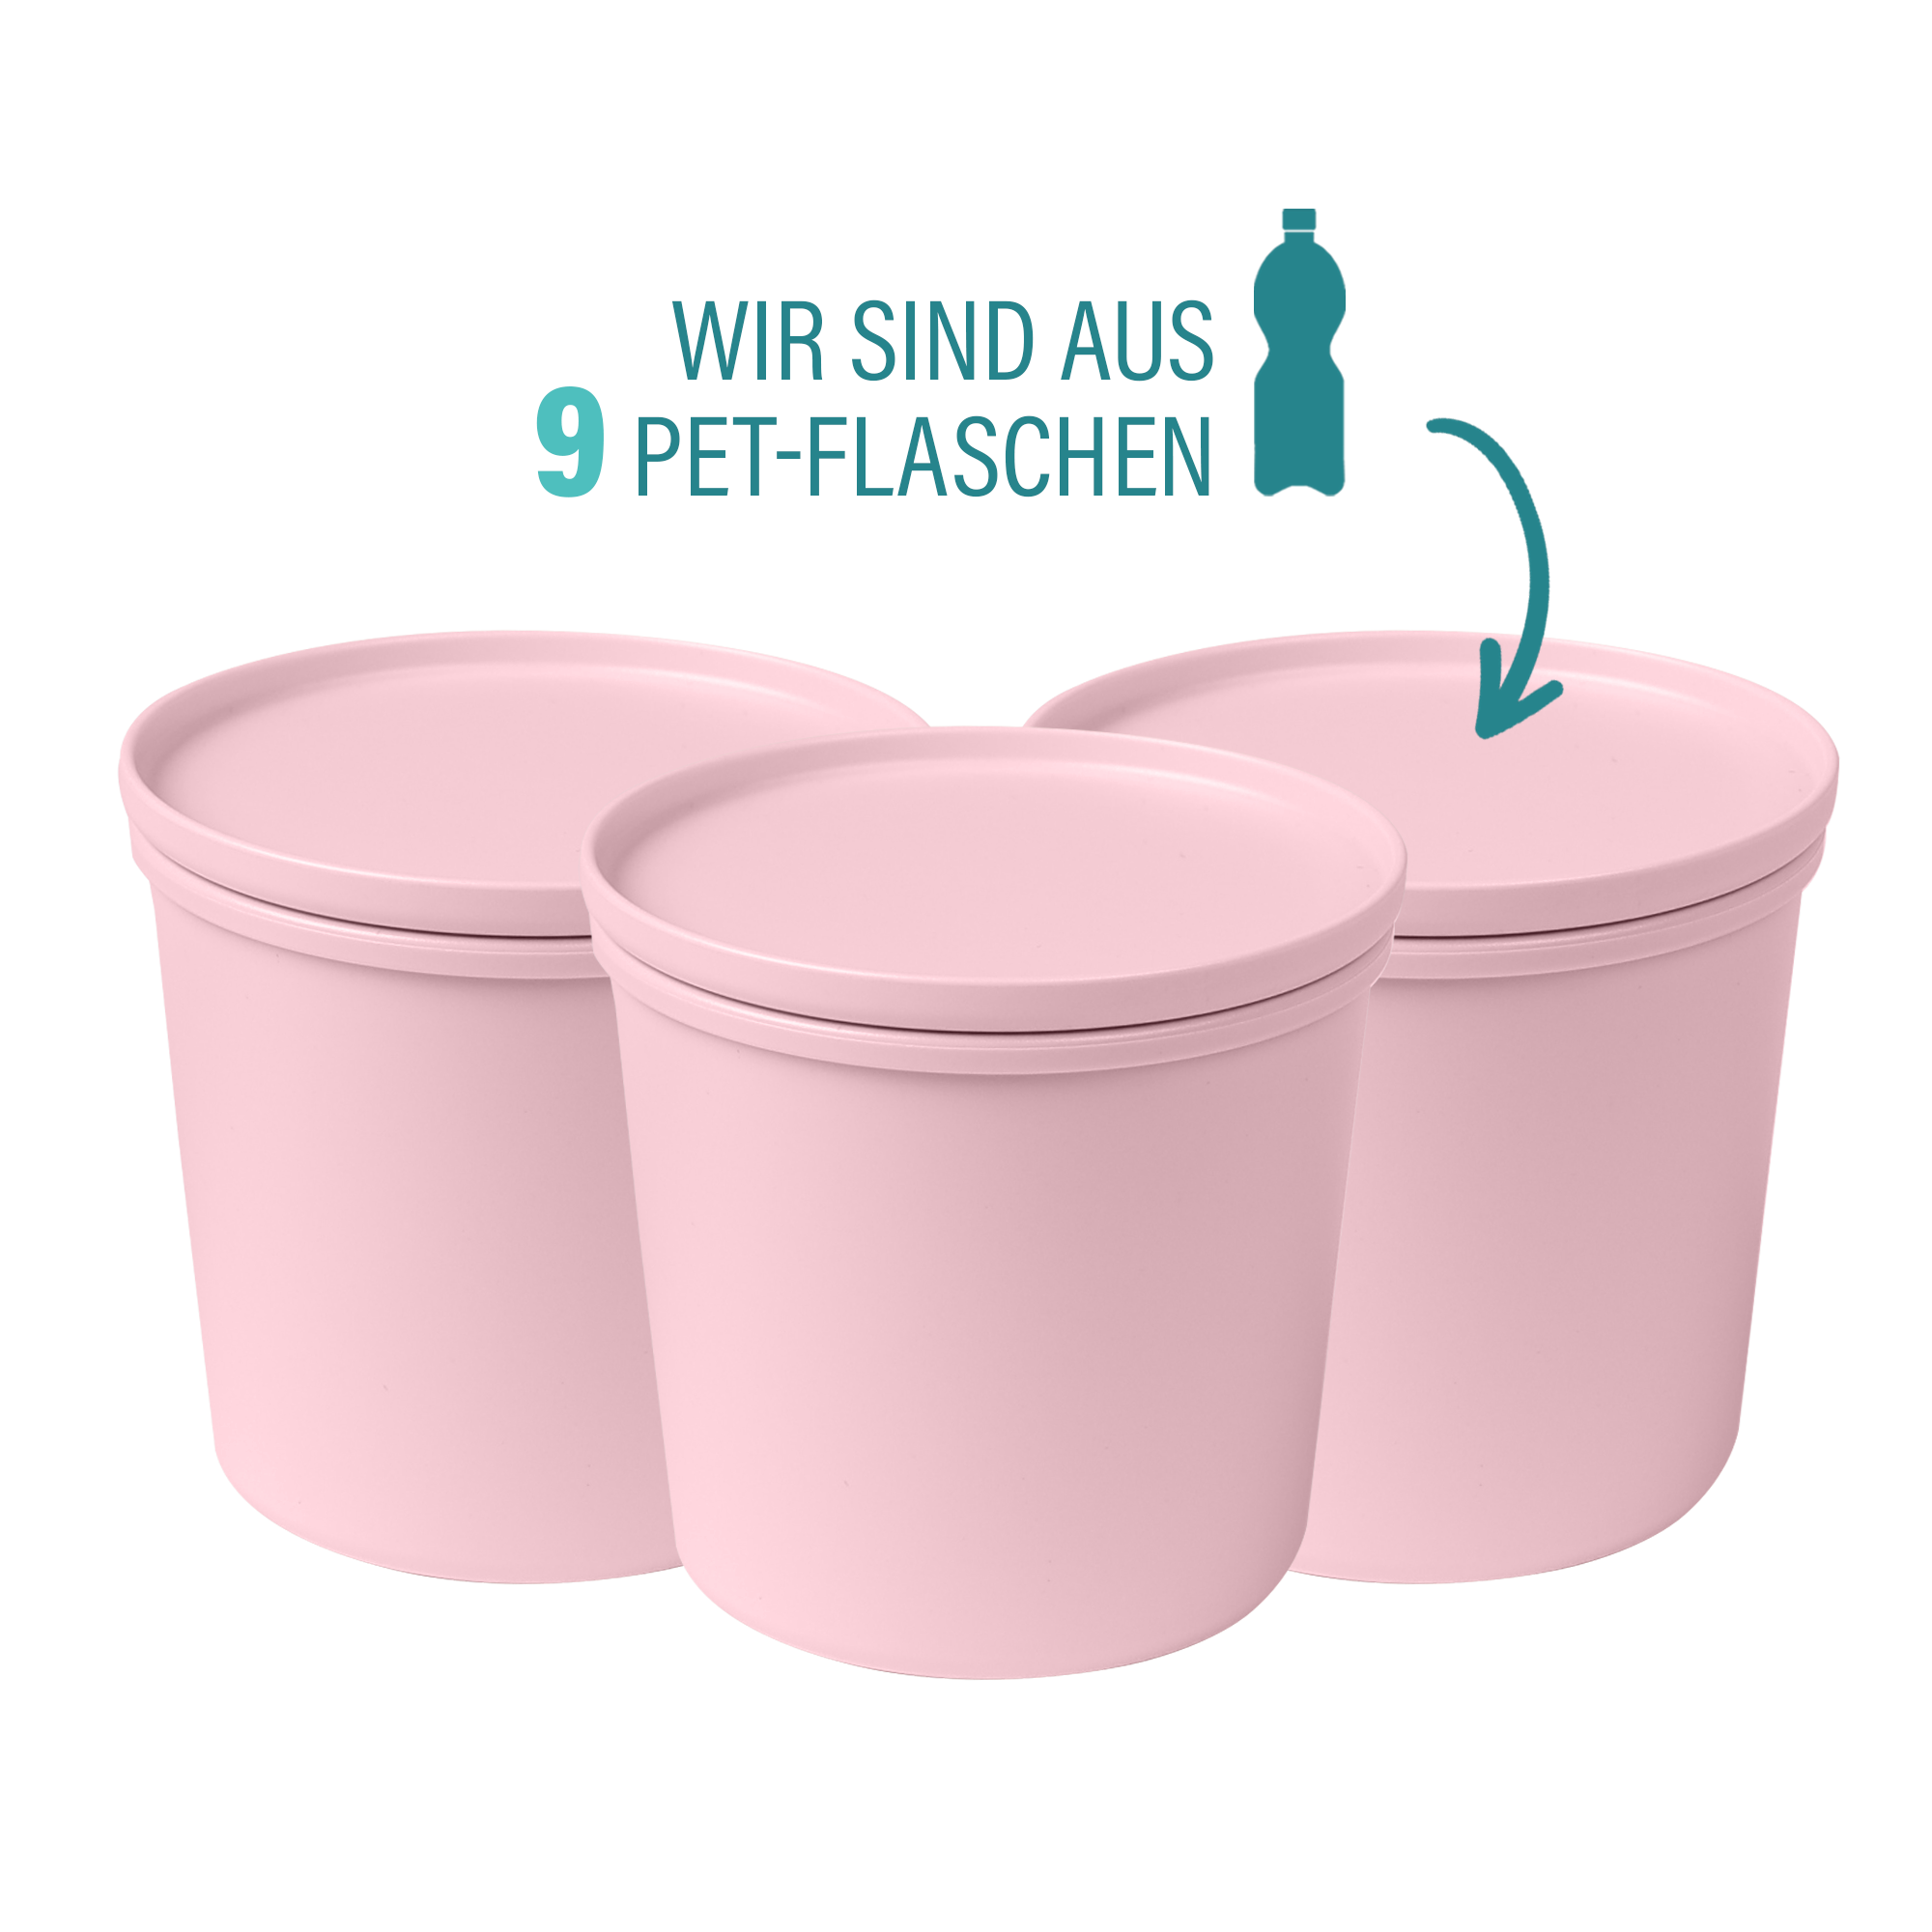 AWAVE® Juego de 3 cajas para conservar alimentos de 500 ml, con rPET, rosa